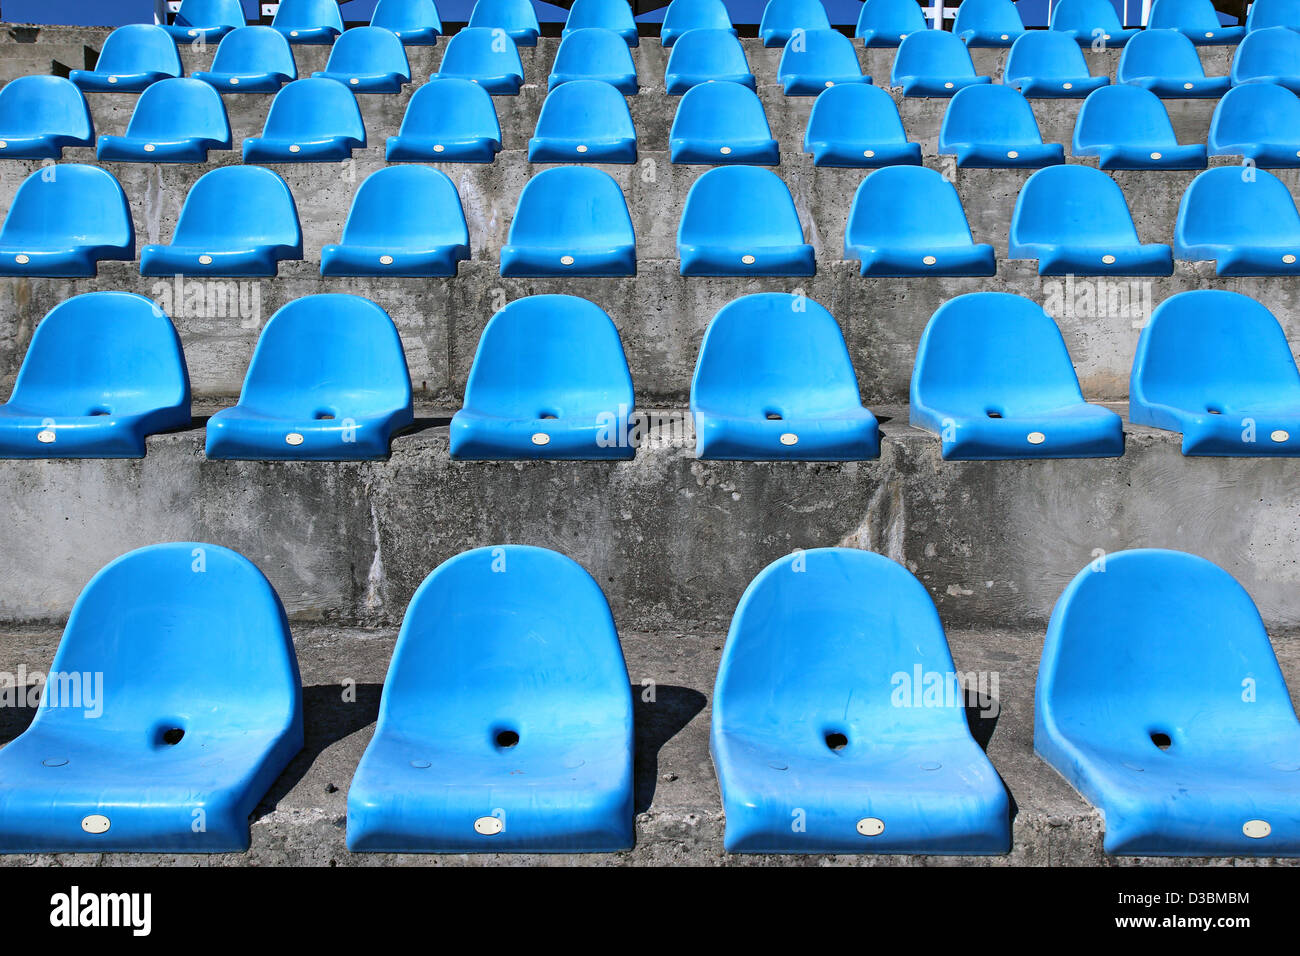 https://c8.alamy.com/comp/D3BMBM/blue-plastic-old-stadium-seats-on-concrete-steps-D3BMBM.jpg